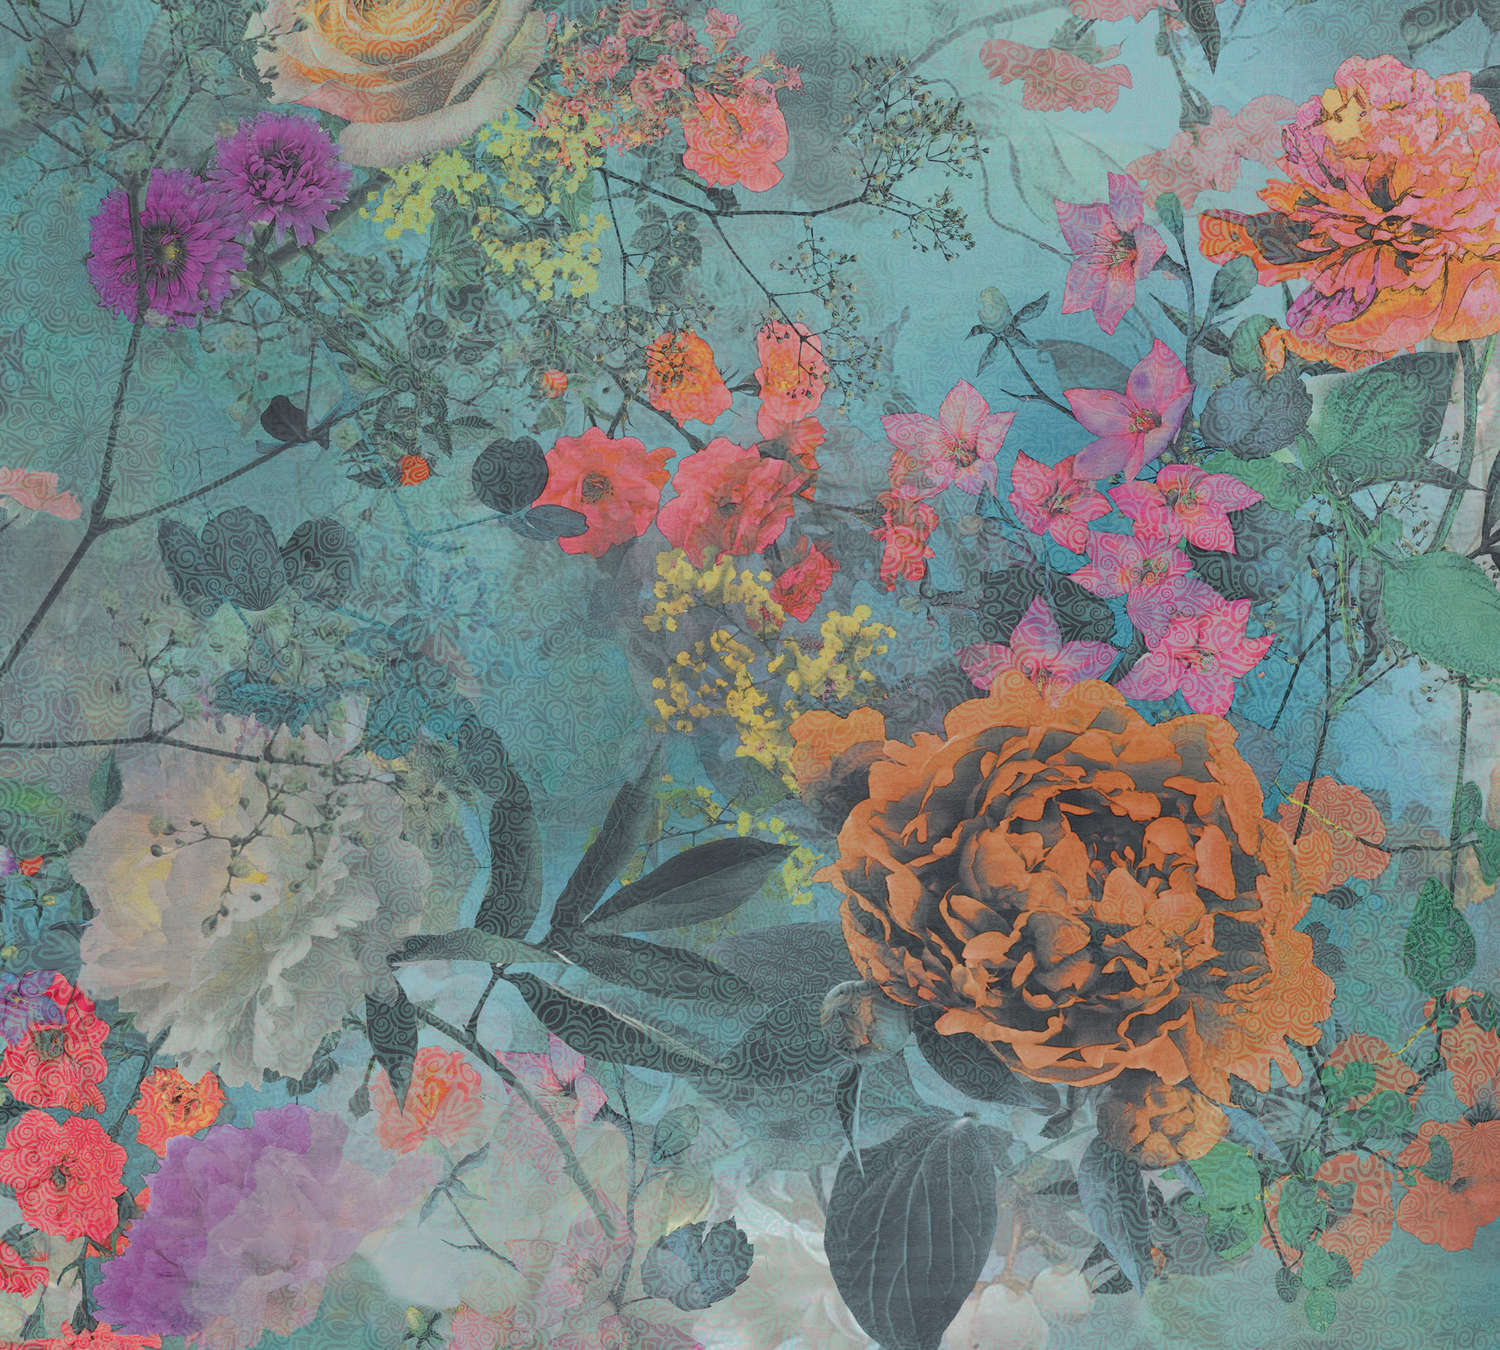             Papel pintado para habitaciones juveniles con motivos florales - Azul, Naranja, Rosa
        